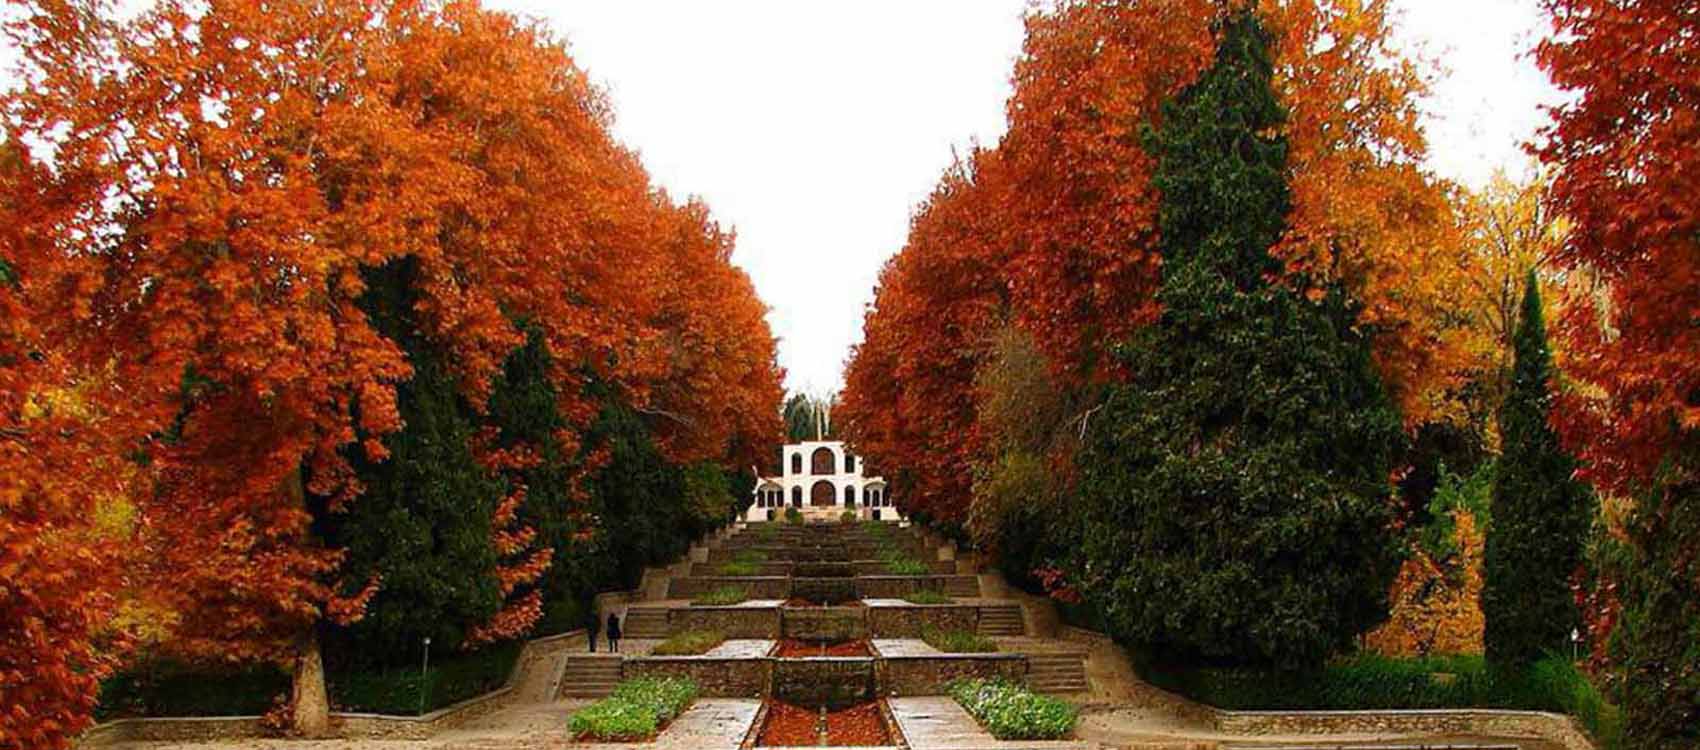 Shahzadeh Garden